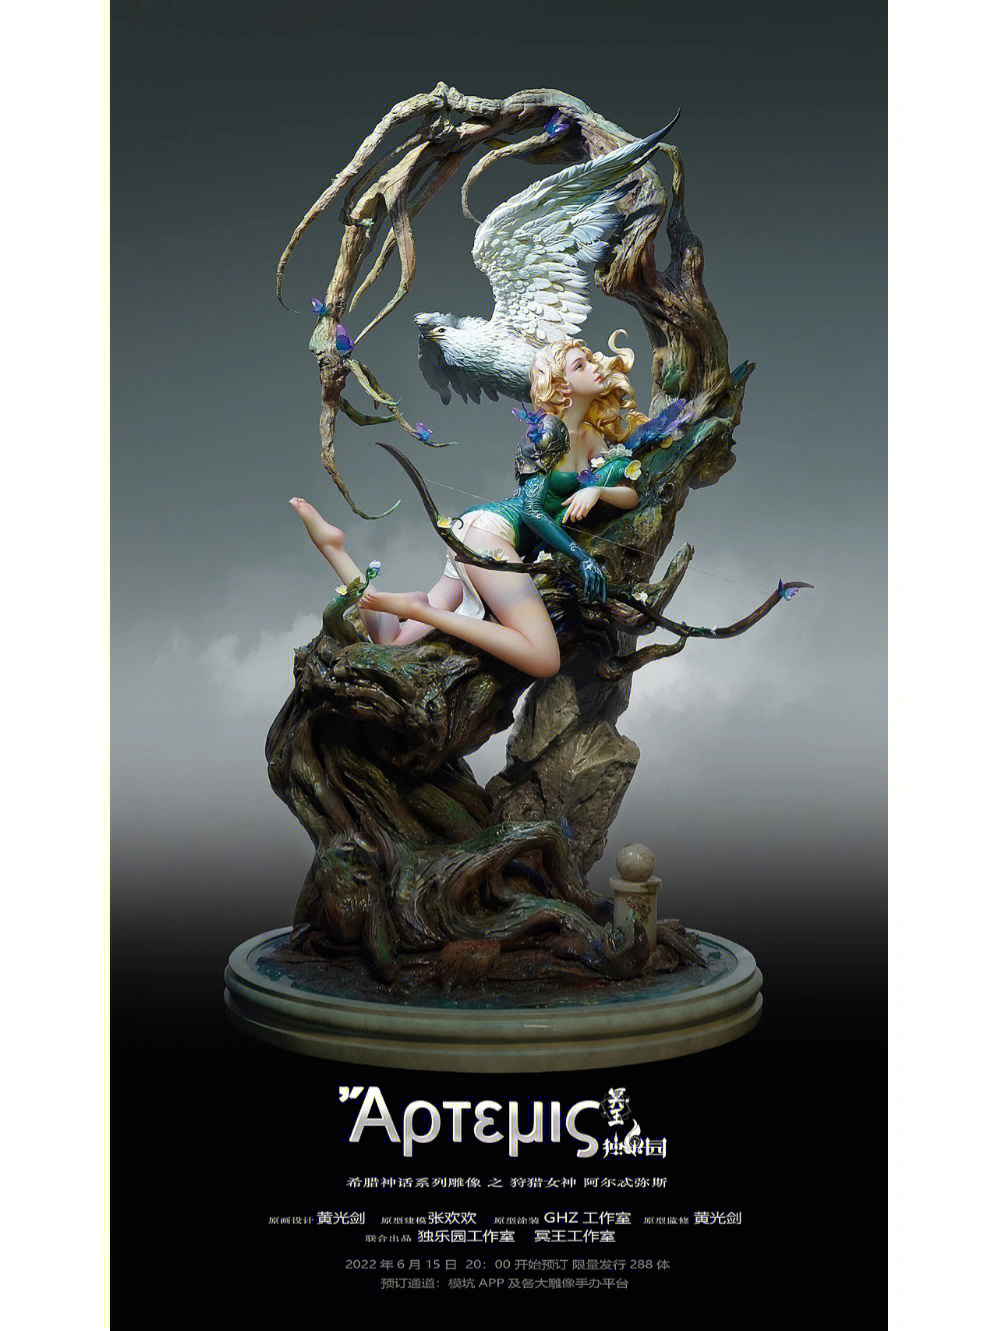 和光剑合作的希腊神话系列雕像之一狩猎女神